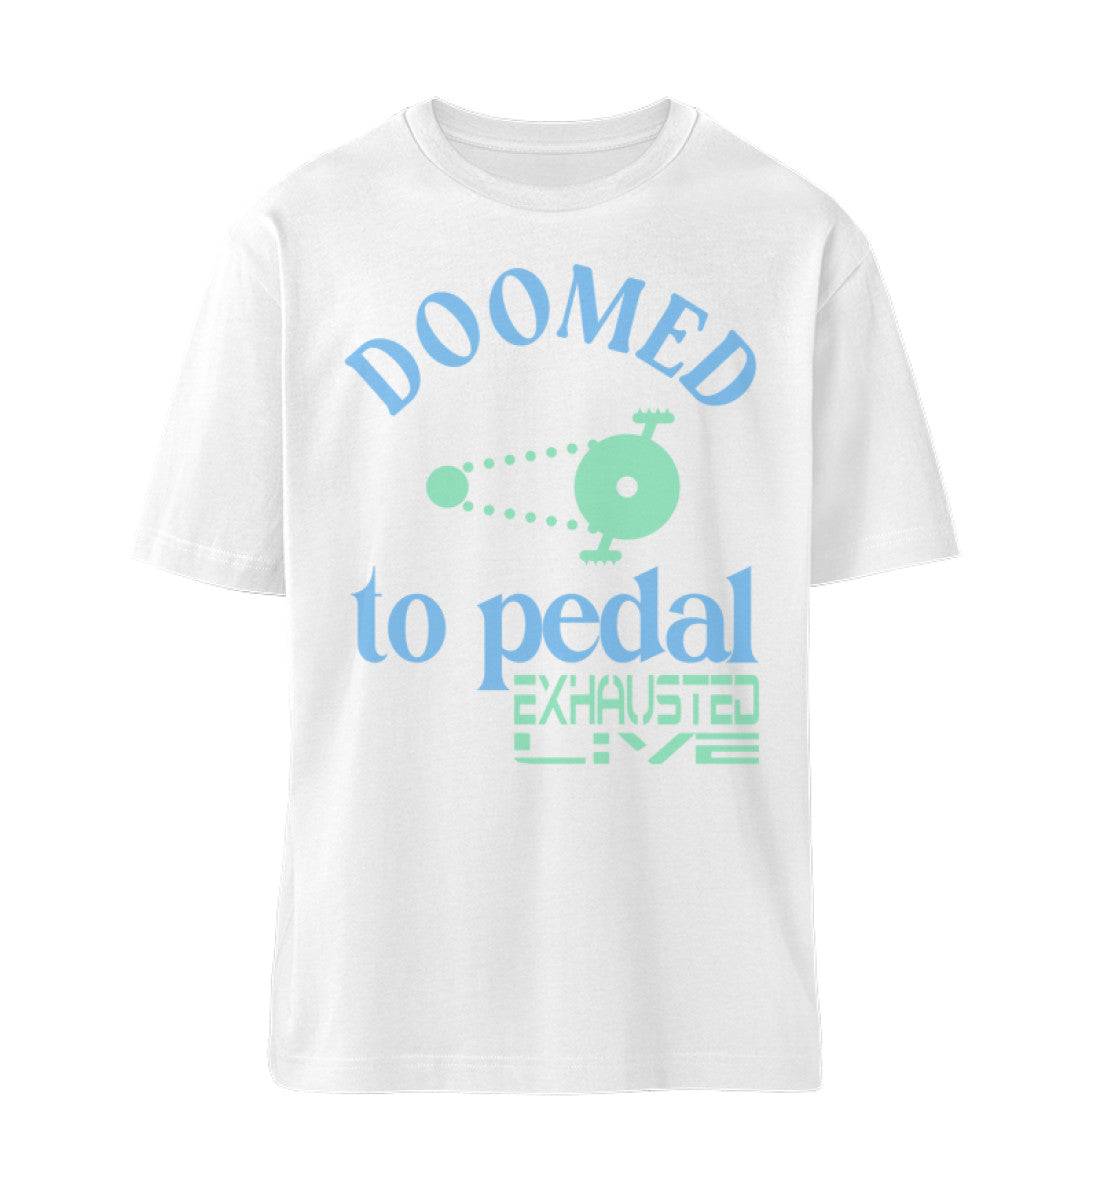 Weißes T-Shirt Unisex Relaxed Fit für Frauen und Männer bedruckt mit dem Design der Roger Rockawoo Kollektion Mountainbike doomed to pedal